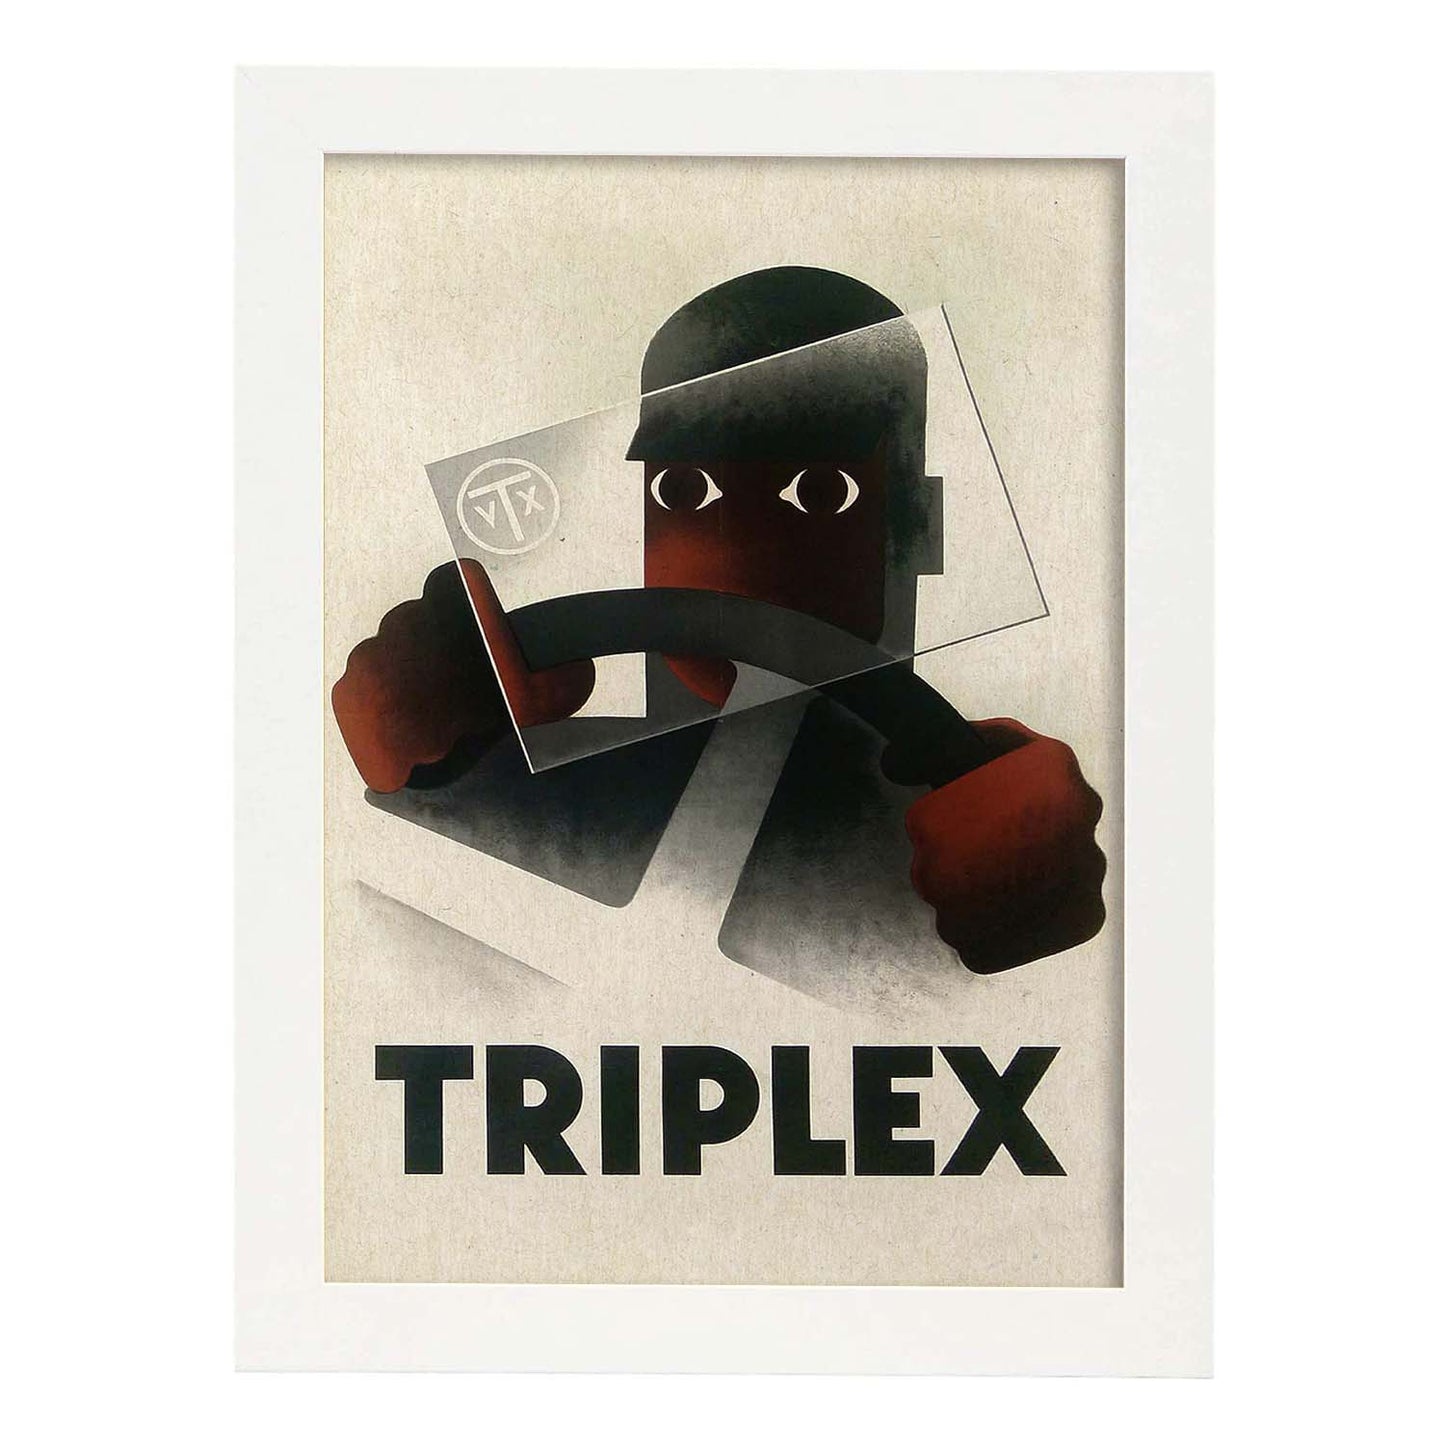 Poster vintage. Cartel vintage Triplex, 1931.-Artwork-Nacnic-A4-Marco Blanco-Nacnic Estudio SL